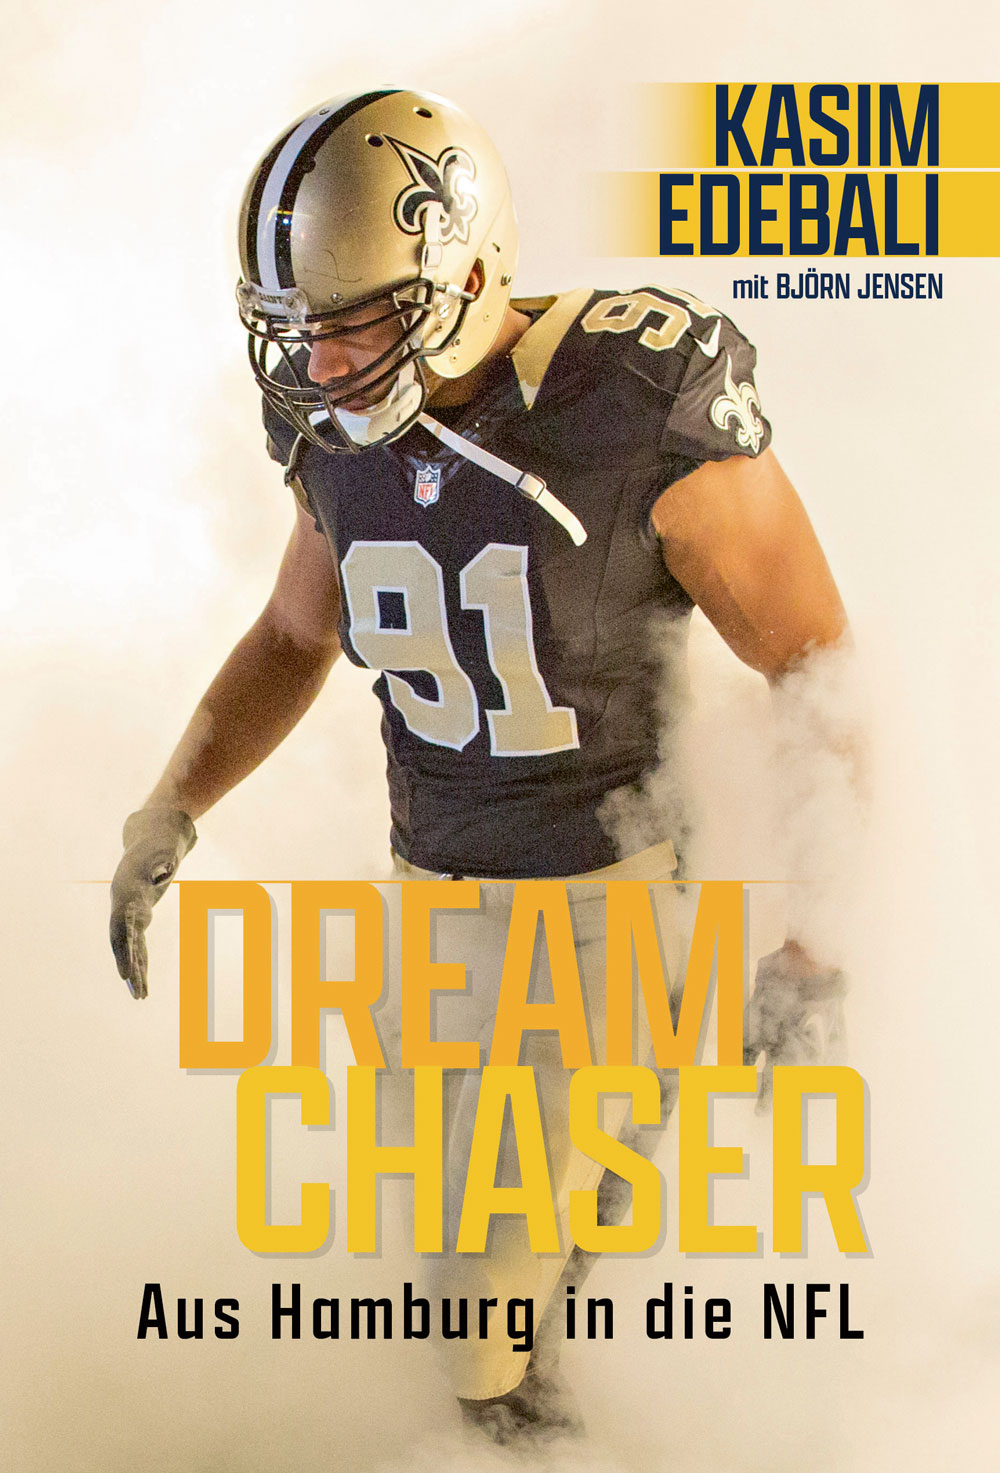 Karim Edebalis Buch "Dream Chaser" beschreibt seinen Weg aus Hamburg in die NFL.